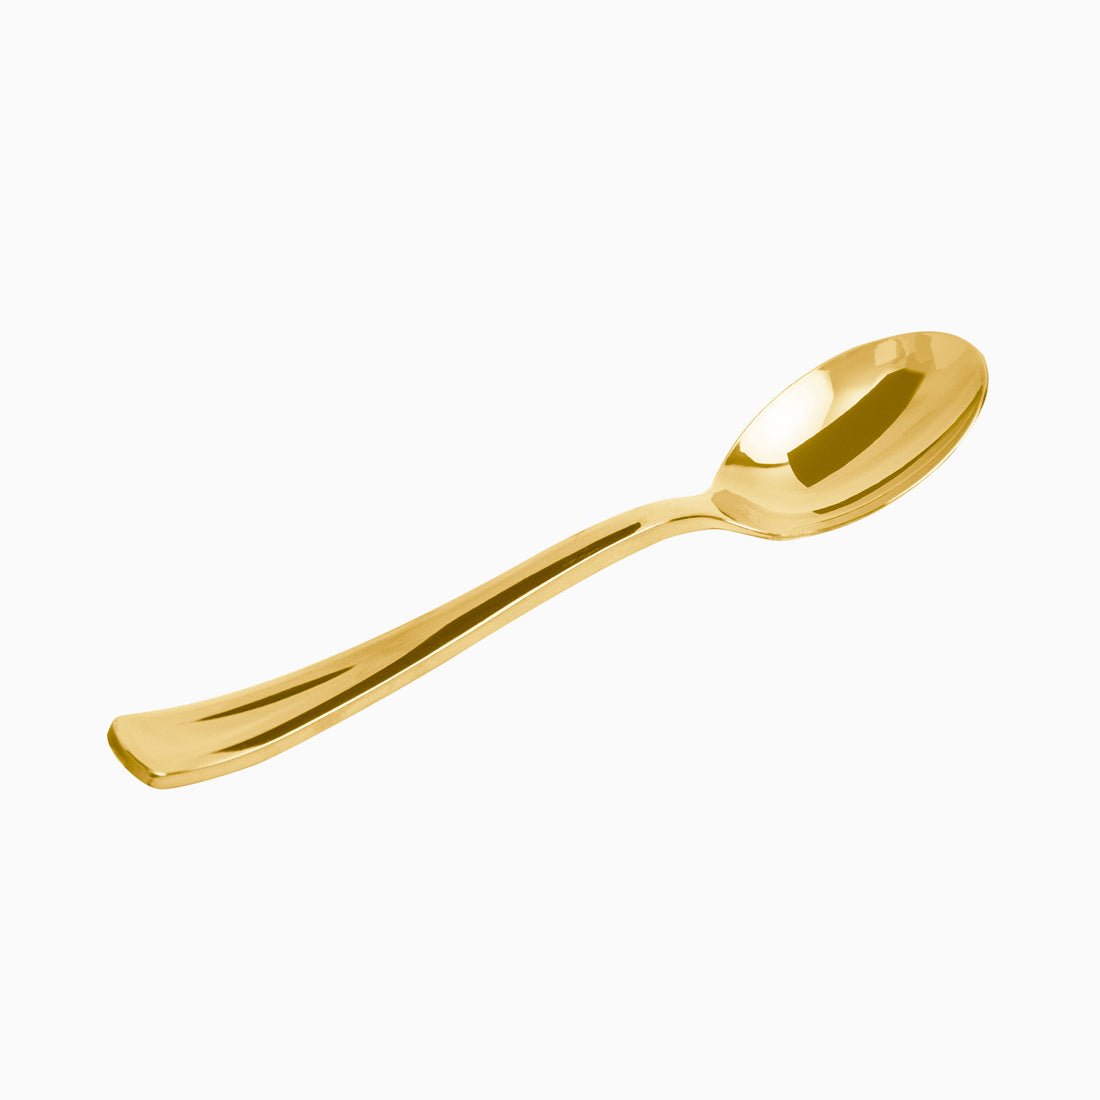 Cucchiaio di plastica riutilizzabile 17,20 cm oro metallico